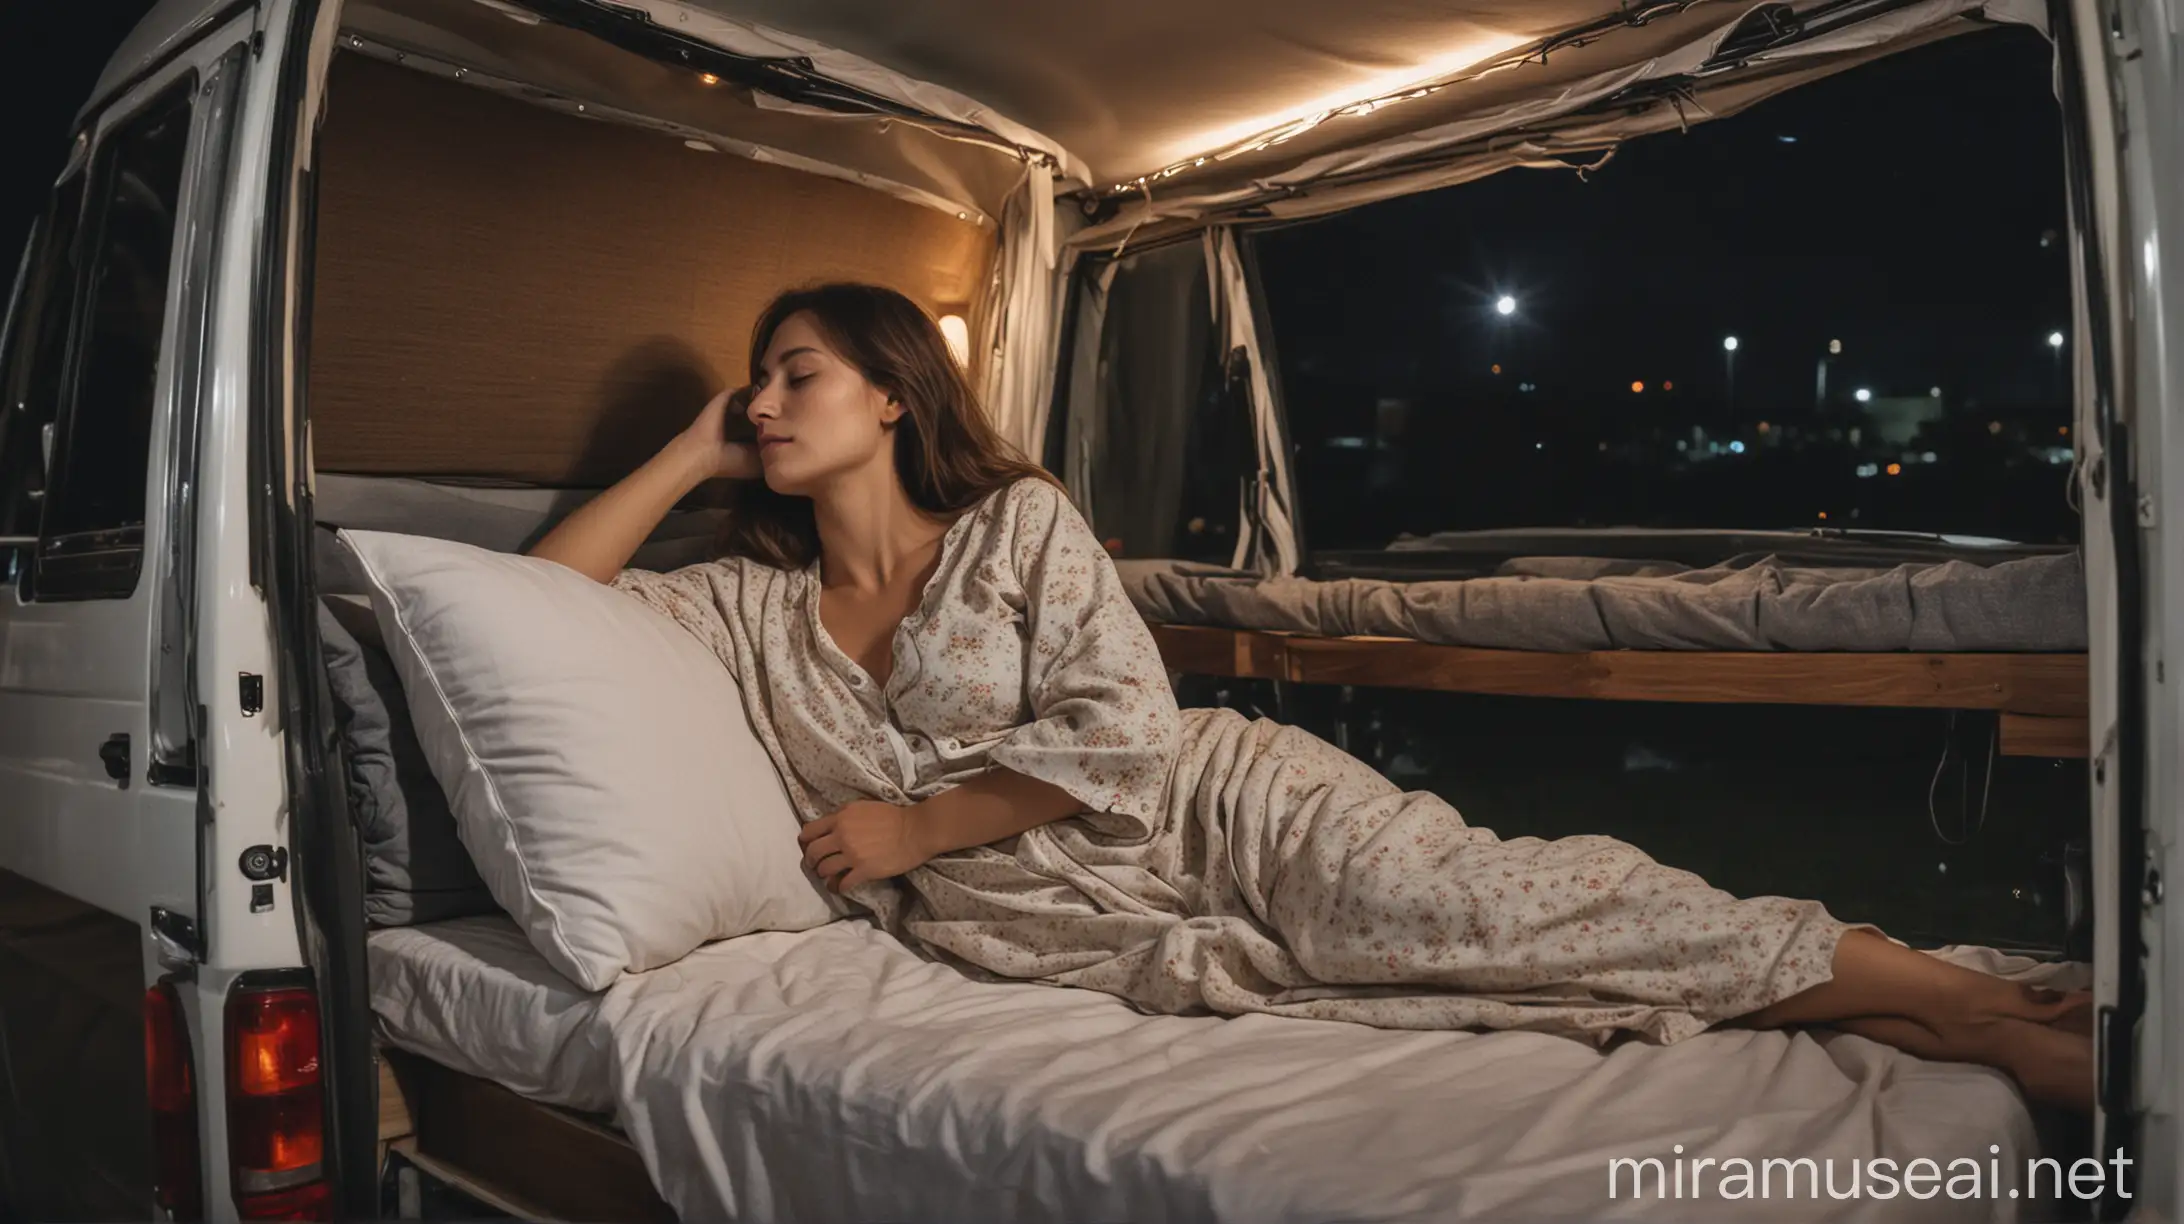 Wanita full body Wanita cantik tidur malam selonjoran rebahan posisi kepala di bantal di dalam mobil campervan panjang pada malam hari